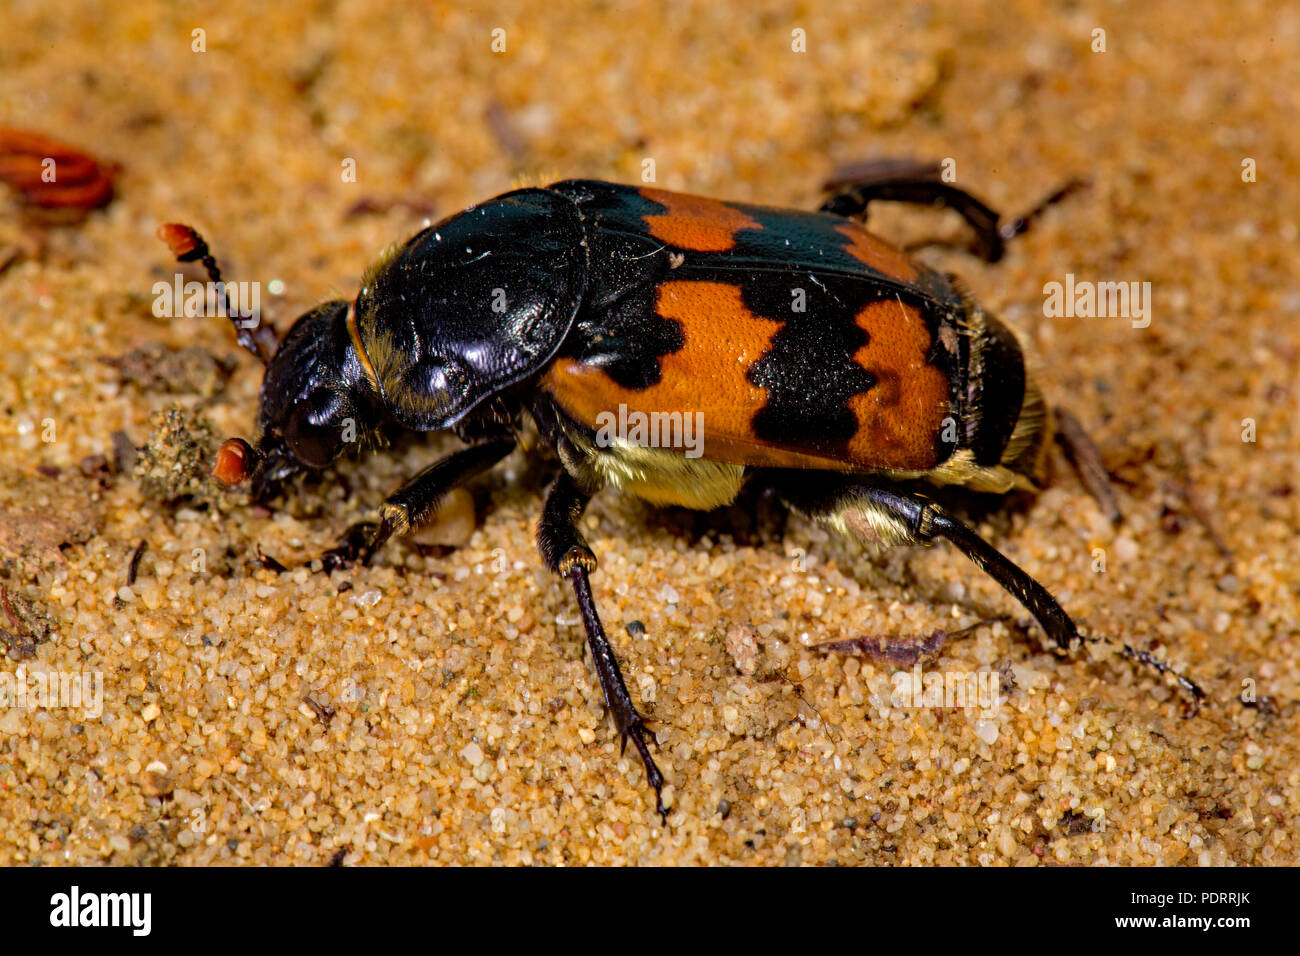 common burying beetle, Nicrophorus vespillo Stock Photo